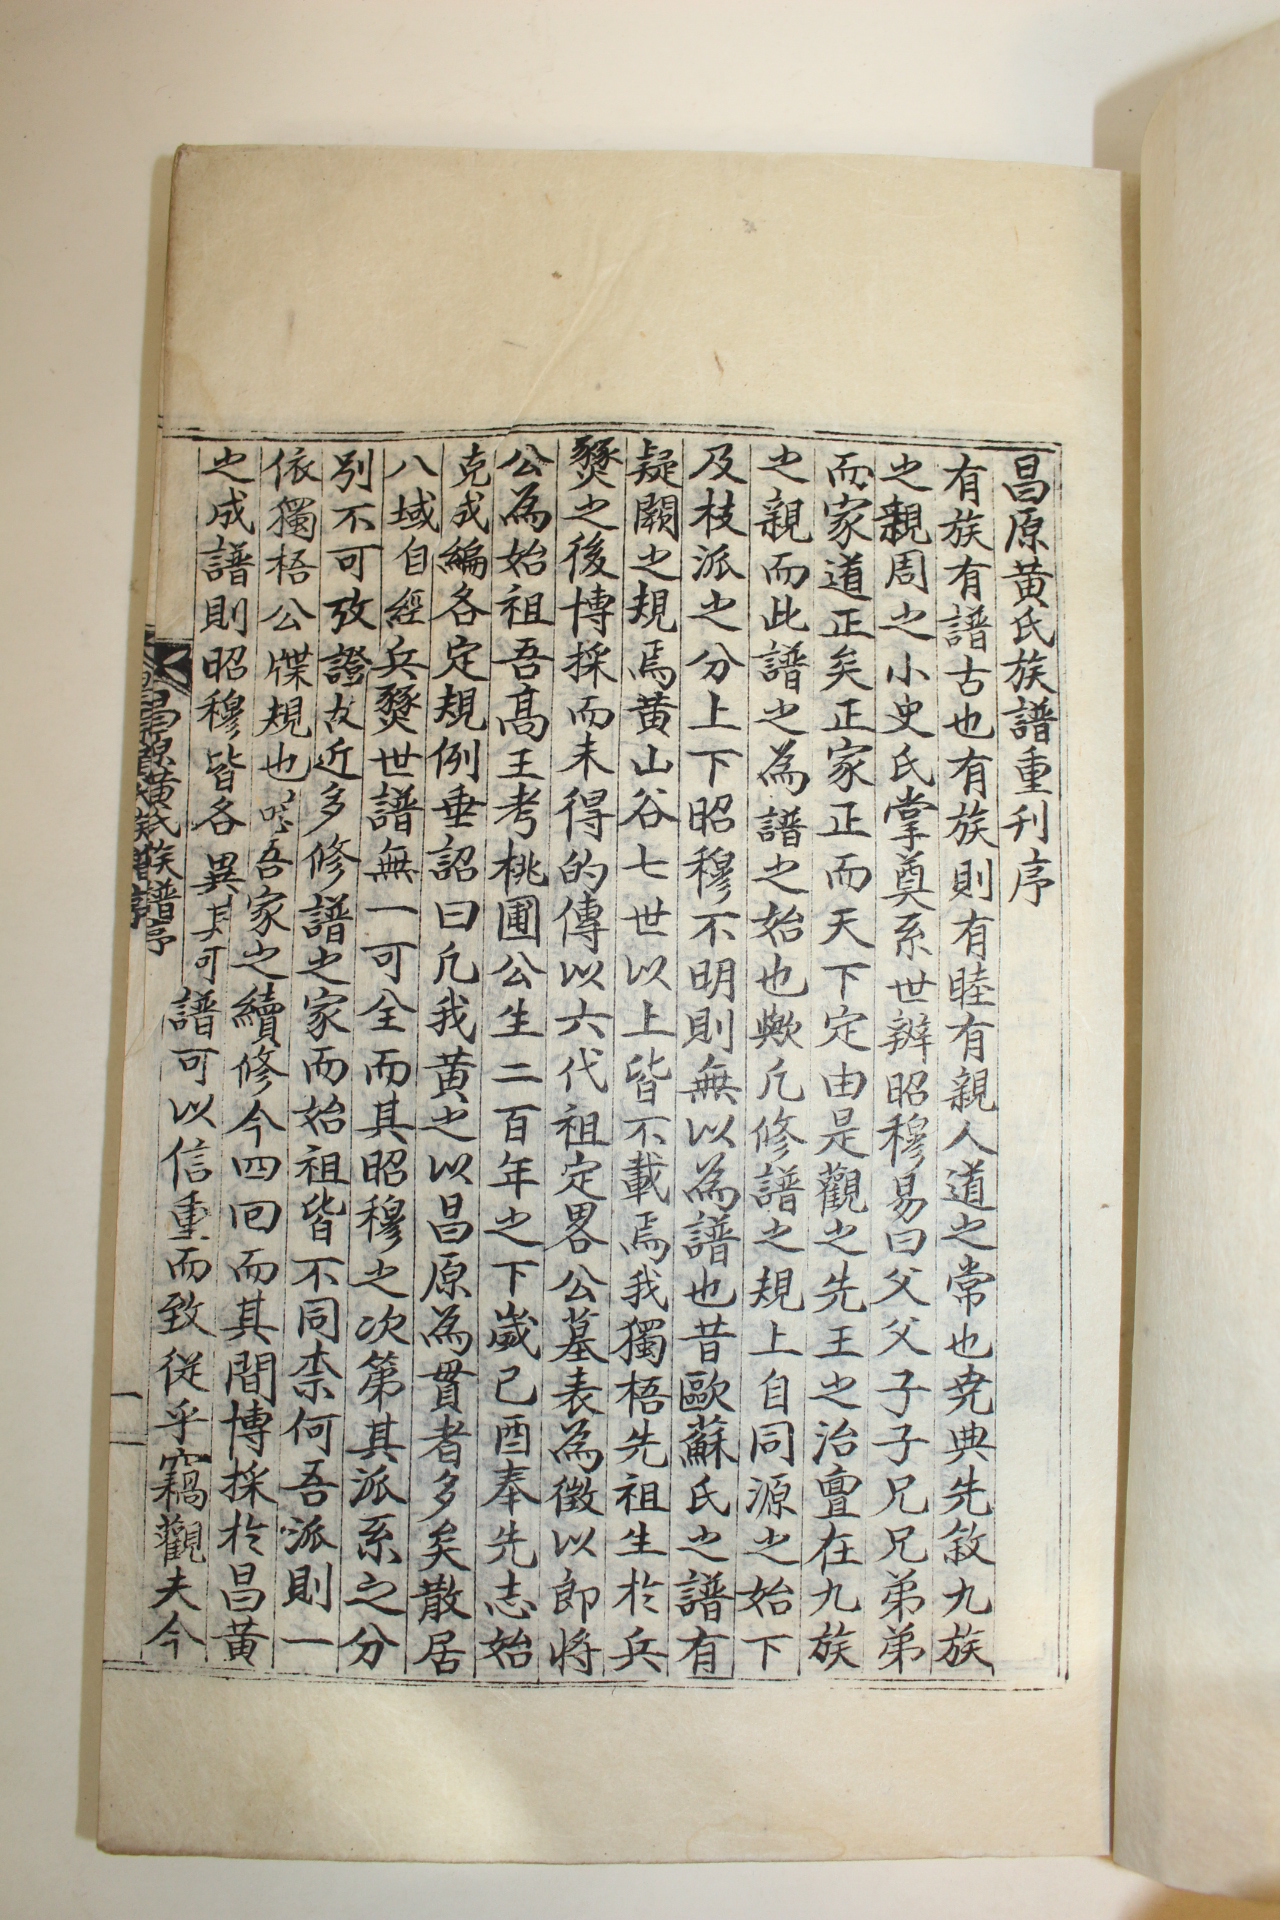 1957년 창원황씨족보(昌原黃氏族譜)권1 1책